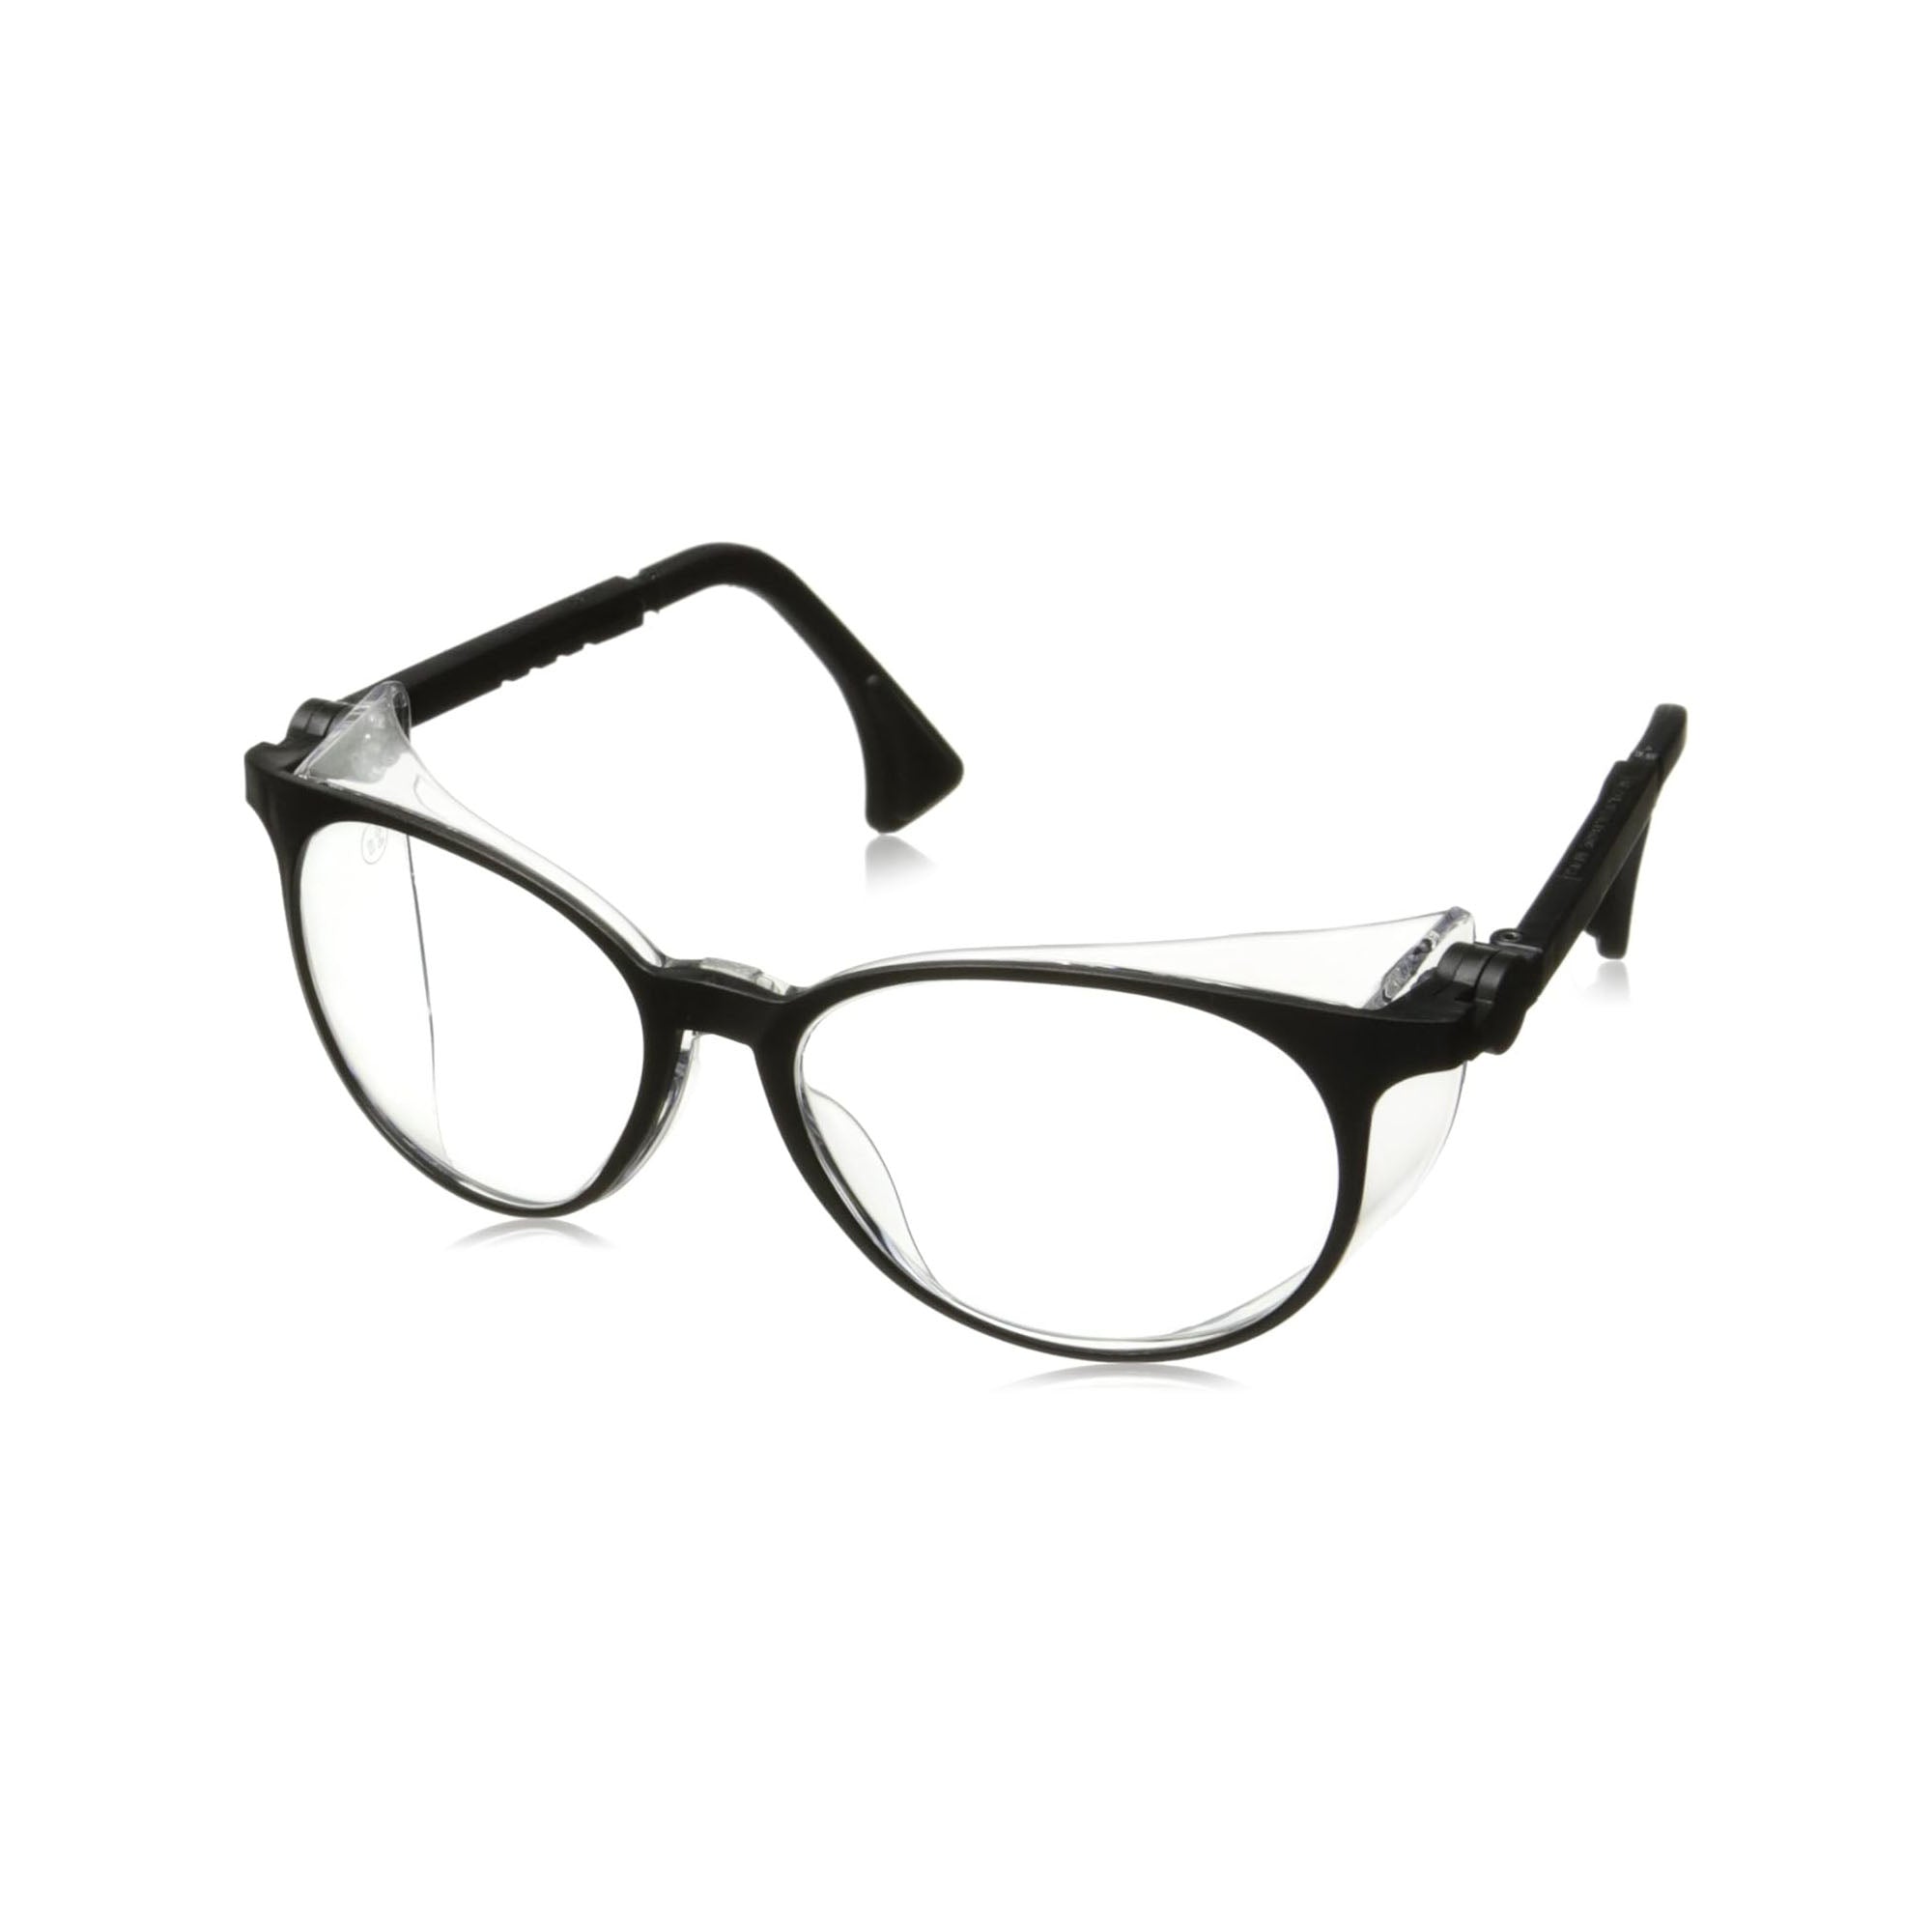 Honeywell Flashback Standard Safety Glasses